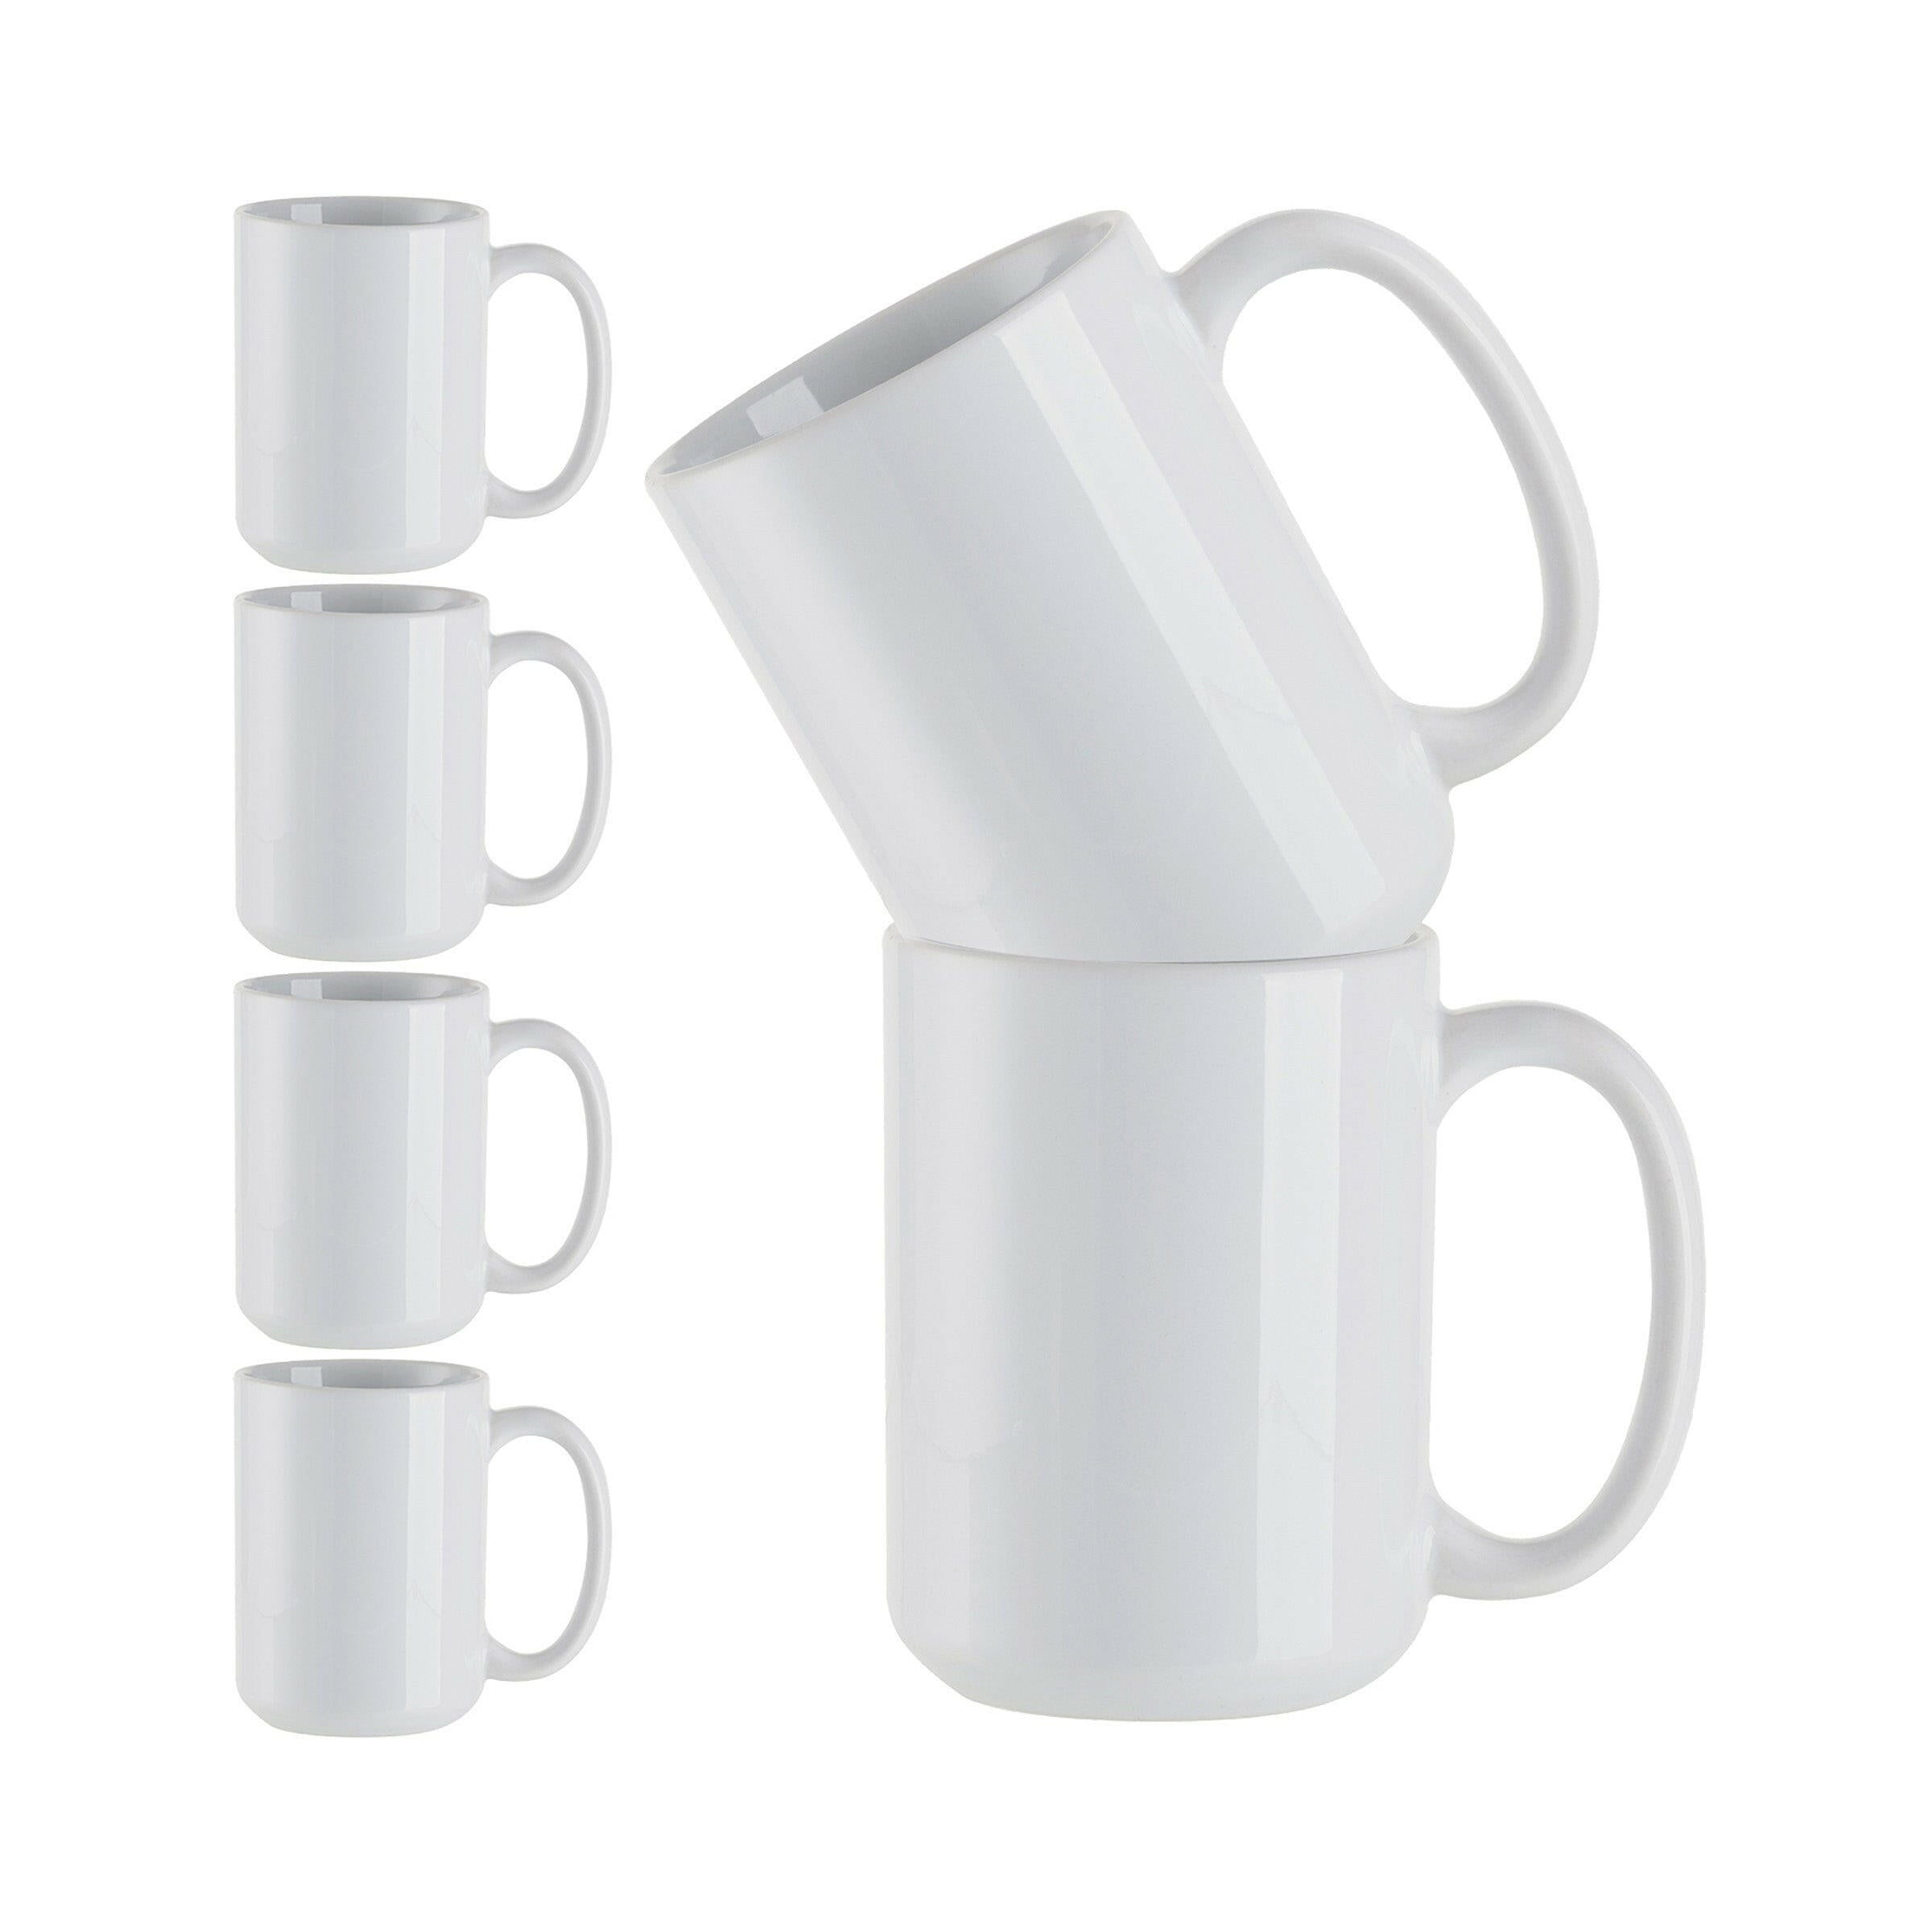 15oz White Ceramic Sublimation Mugs - 6 Pack.